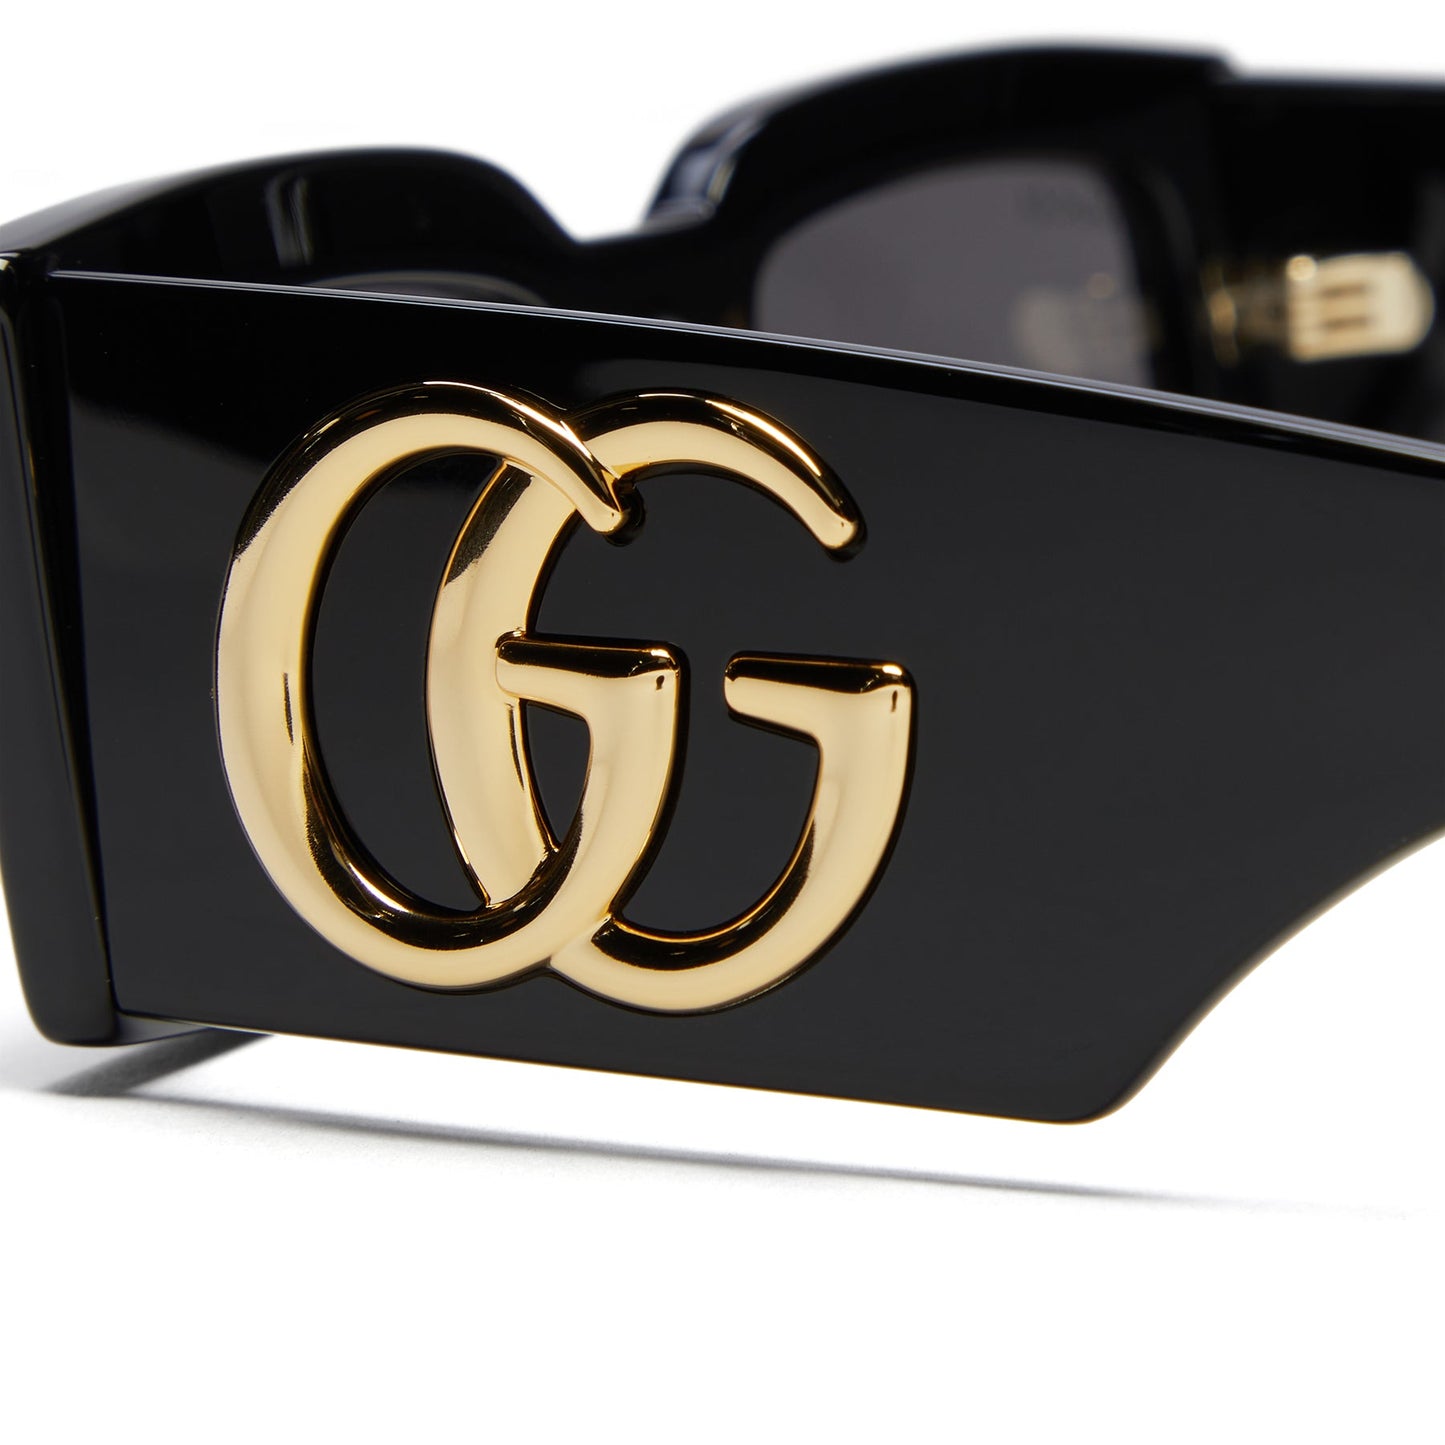 Gucci GG1425S-001-53 53mm New Sunglasses